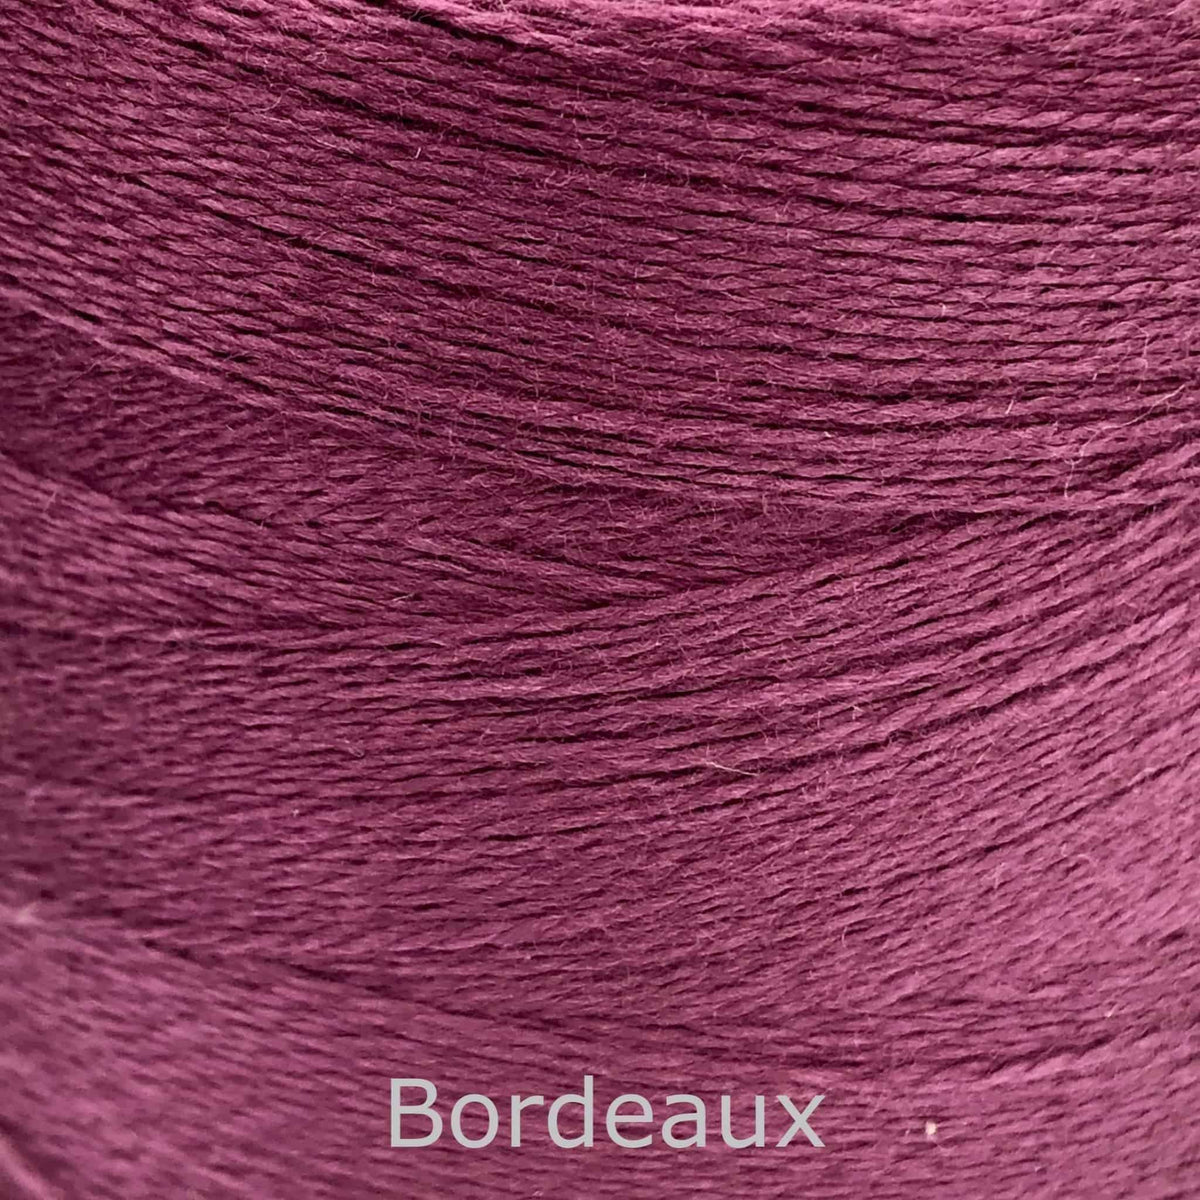 Maurice Brassard Bamboo/Cotton Ne 8/2 BORDEAUX - Thread Collective Australia